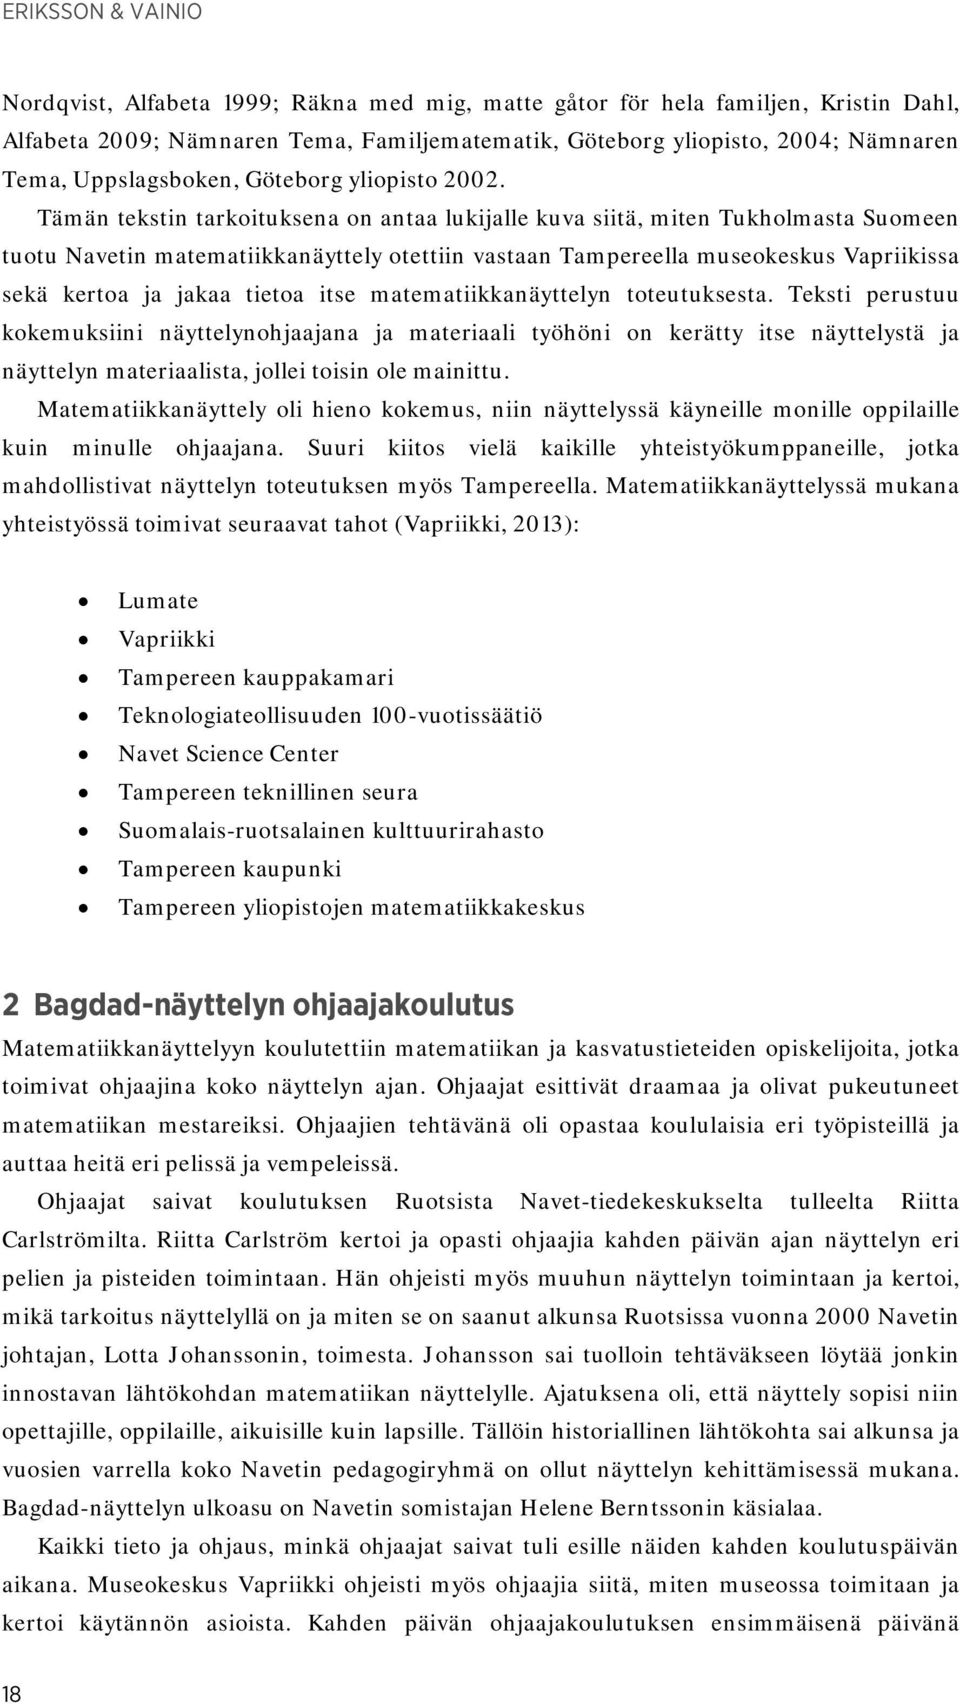 Tämän tekstin tarkoituksena on antaa lukijalle kuva siitä, miten Tukholmasta Suomeen tuotu Navetin matematiikkanäyttely otettiin vastaan Tampereella museokeskus Vapriikissa sekä kertoa ja jakaa